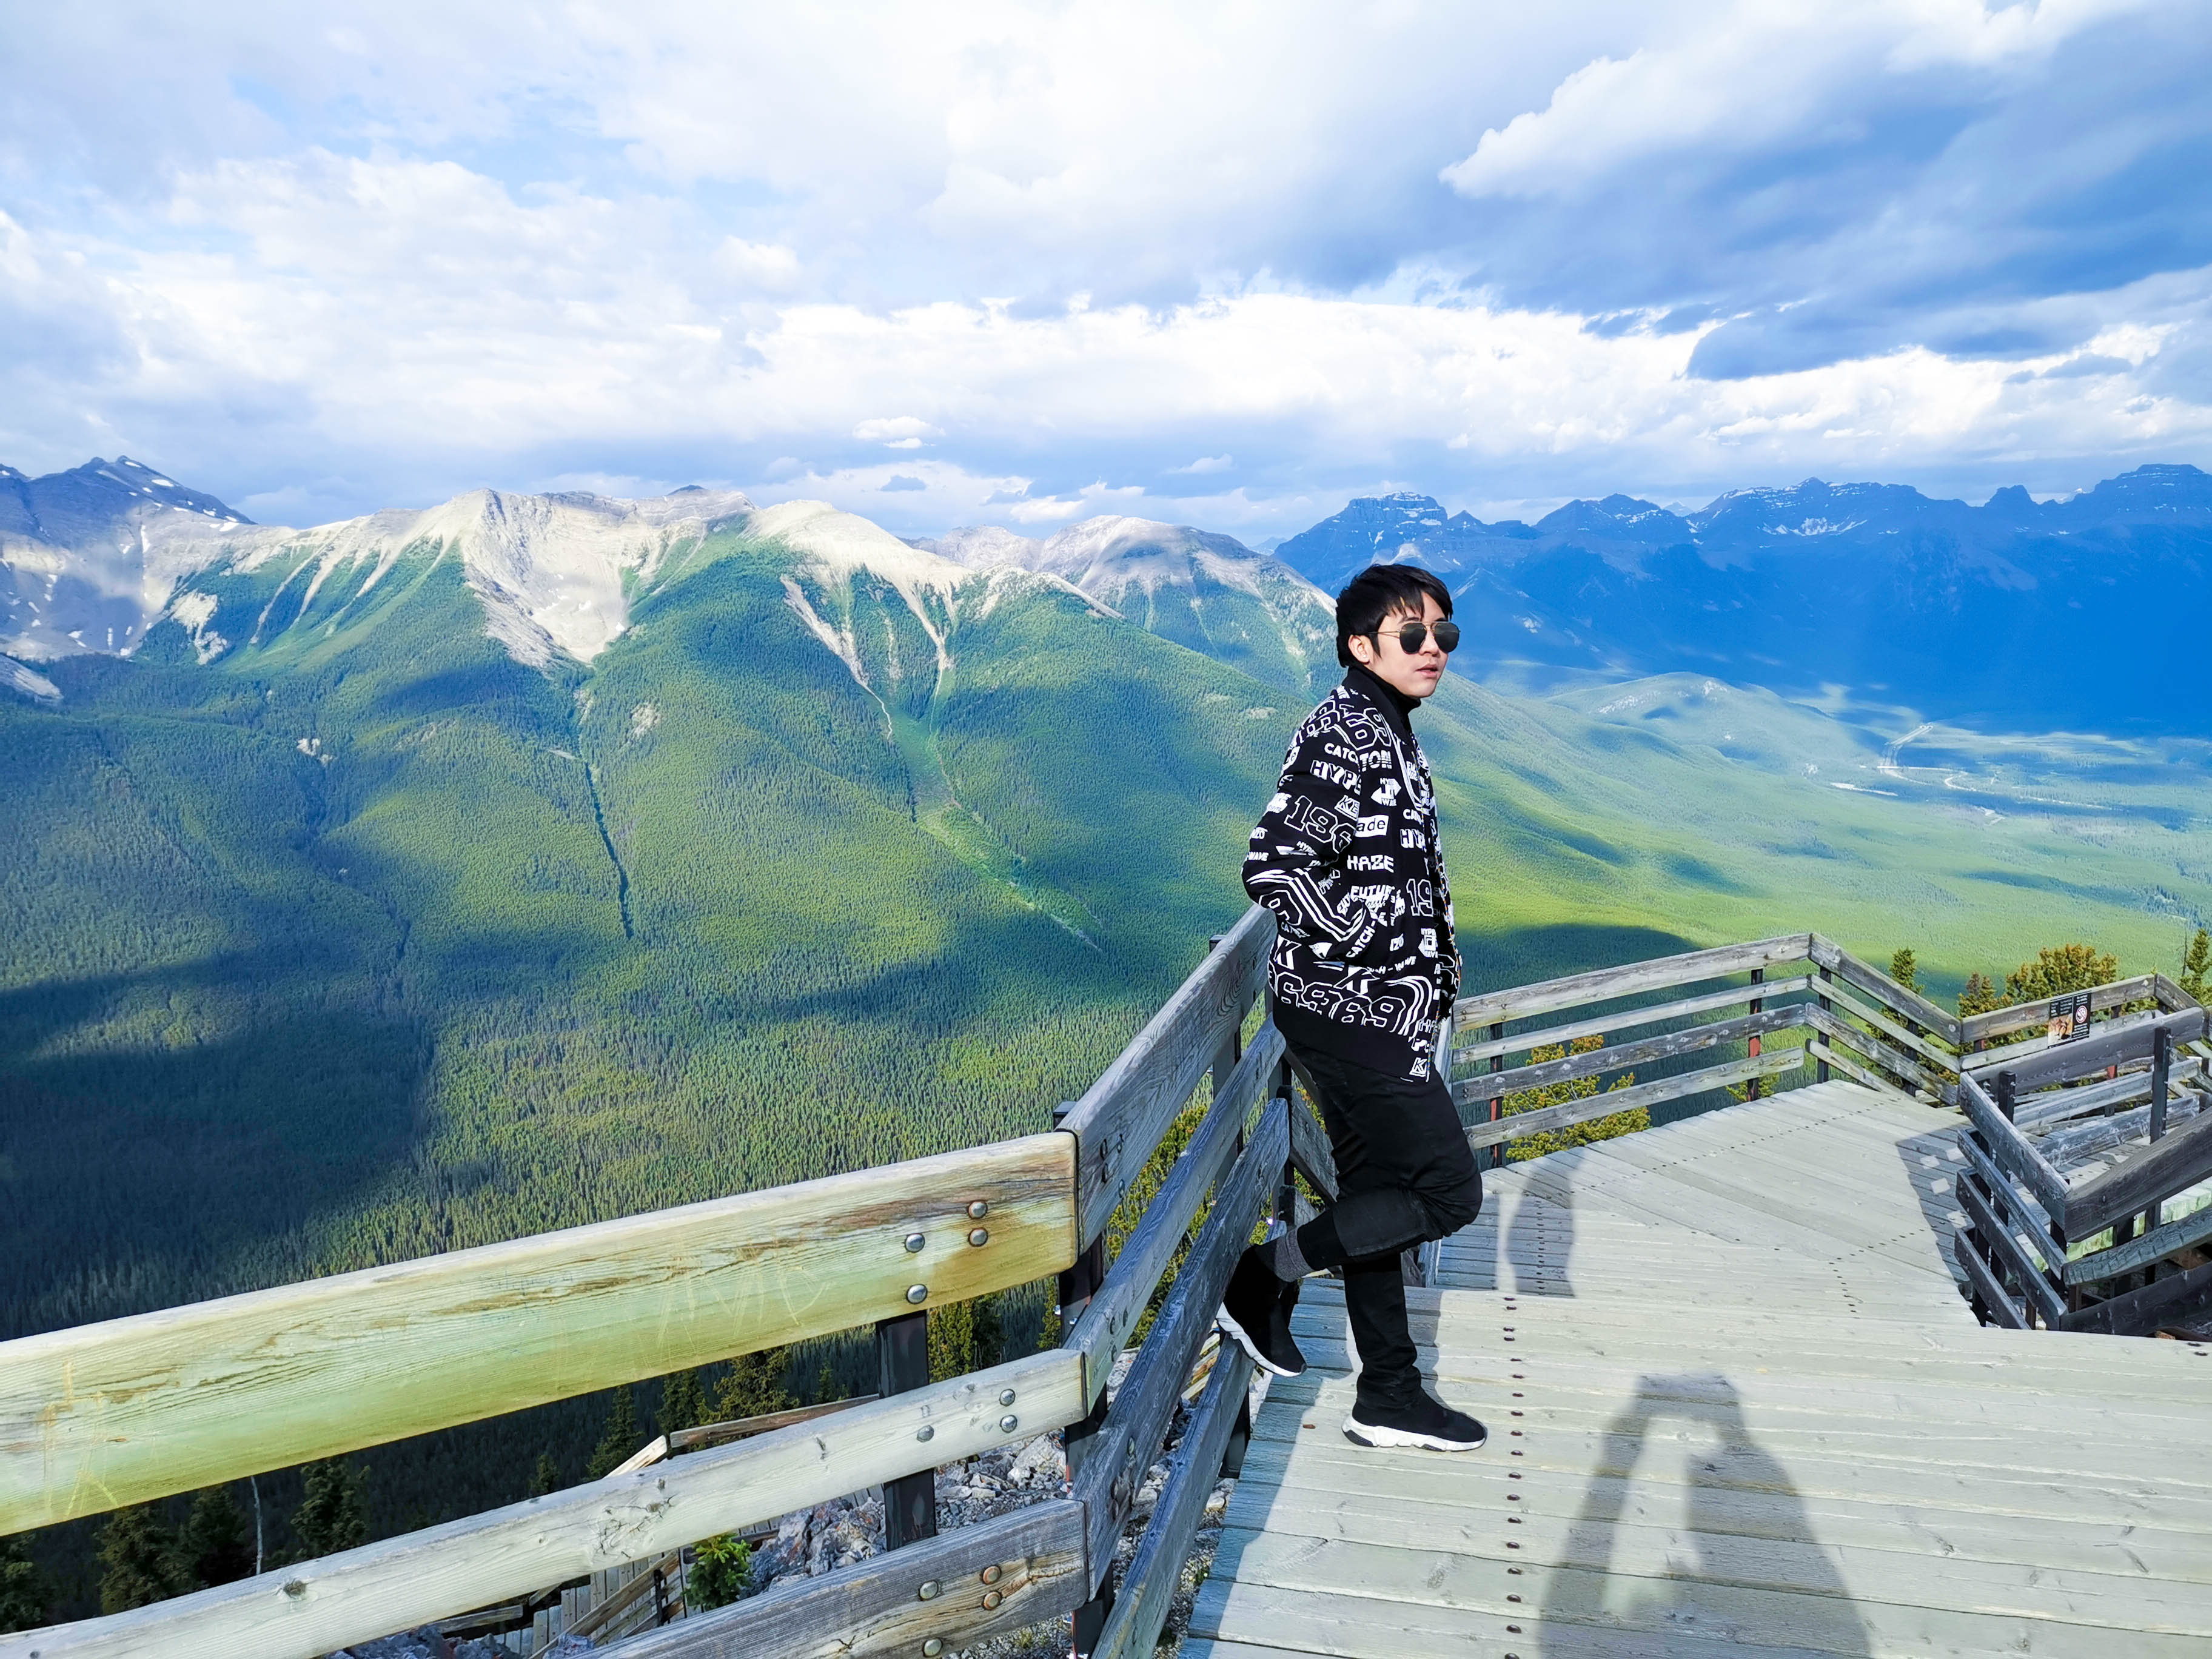 ยอดเขาซัลเฟอร์ (Mt. Sulphur) เที่ยวแคนาดา ทัวร์แคนาดา